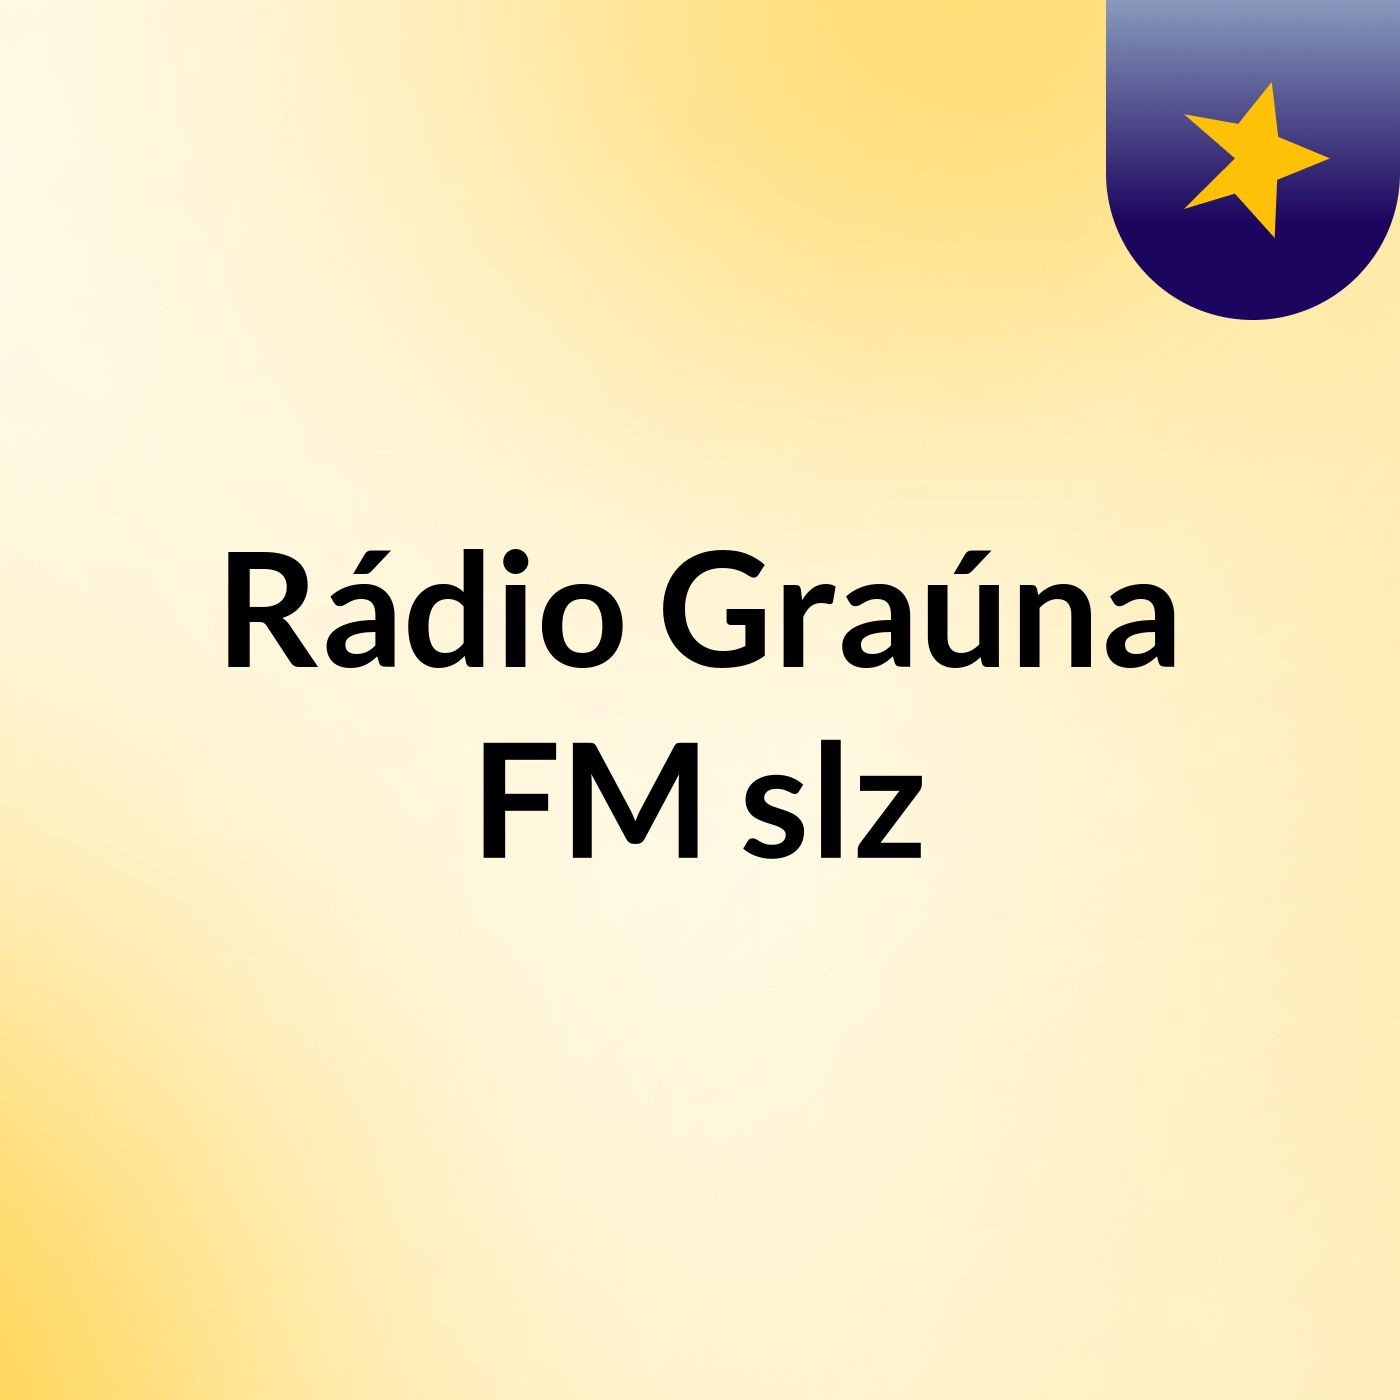 Rádio Graúna FM slz